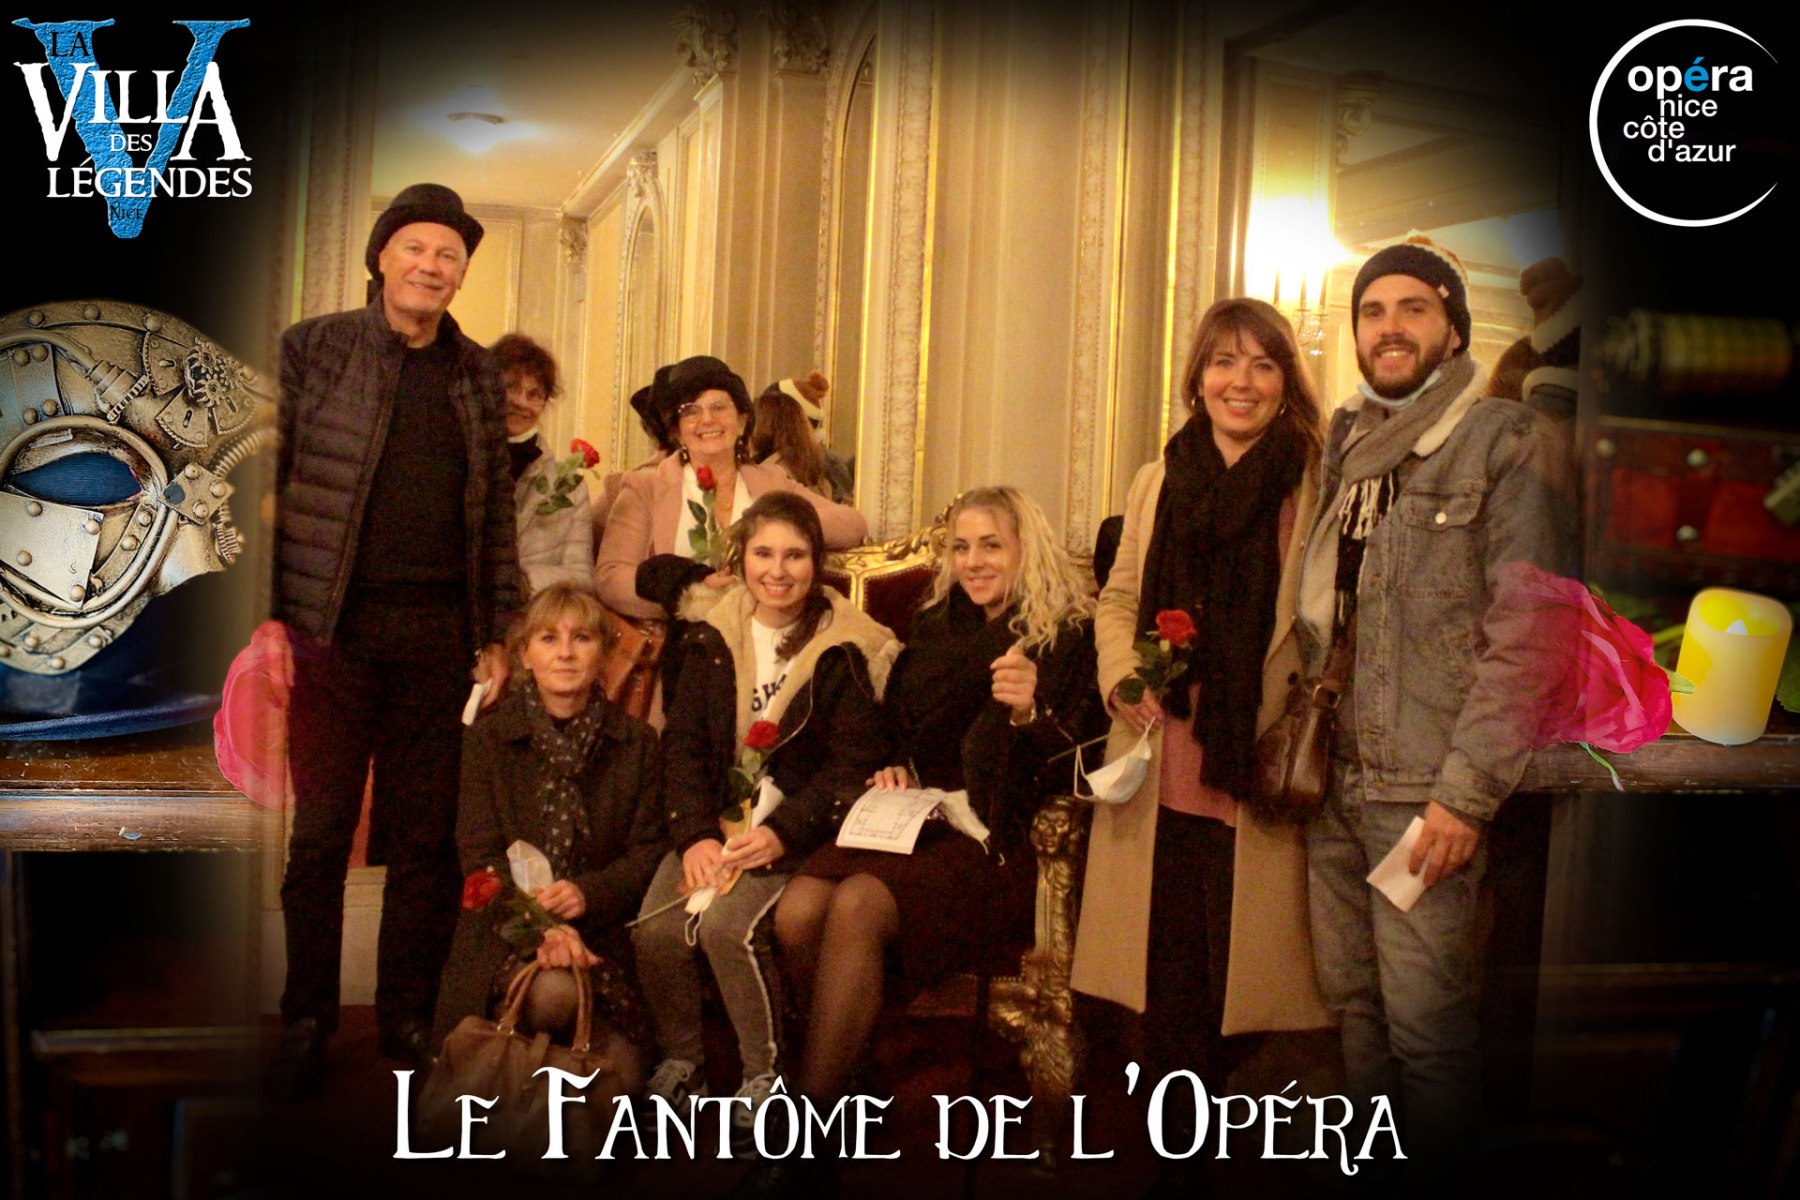 Le_Fantome_de_lOpera-Photos_Joueurs-11_dec_2021-La_Villa_des_Legendes-Opera_de_Nicegroupe_12